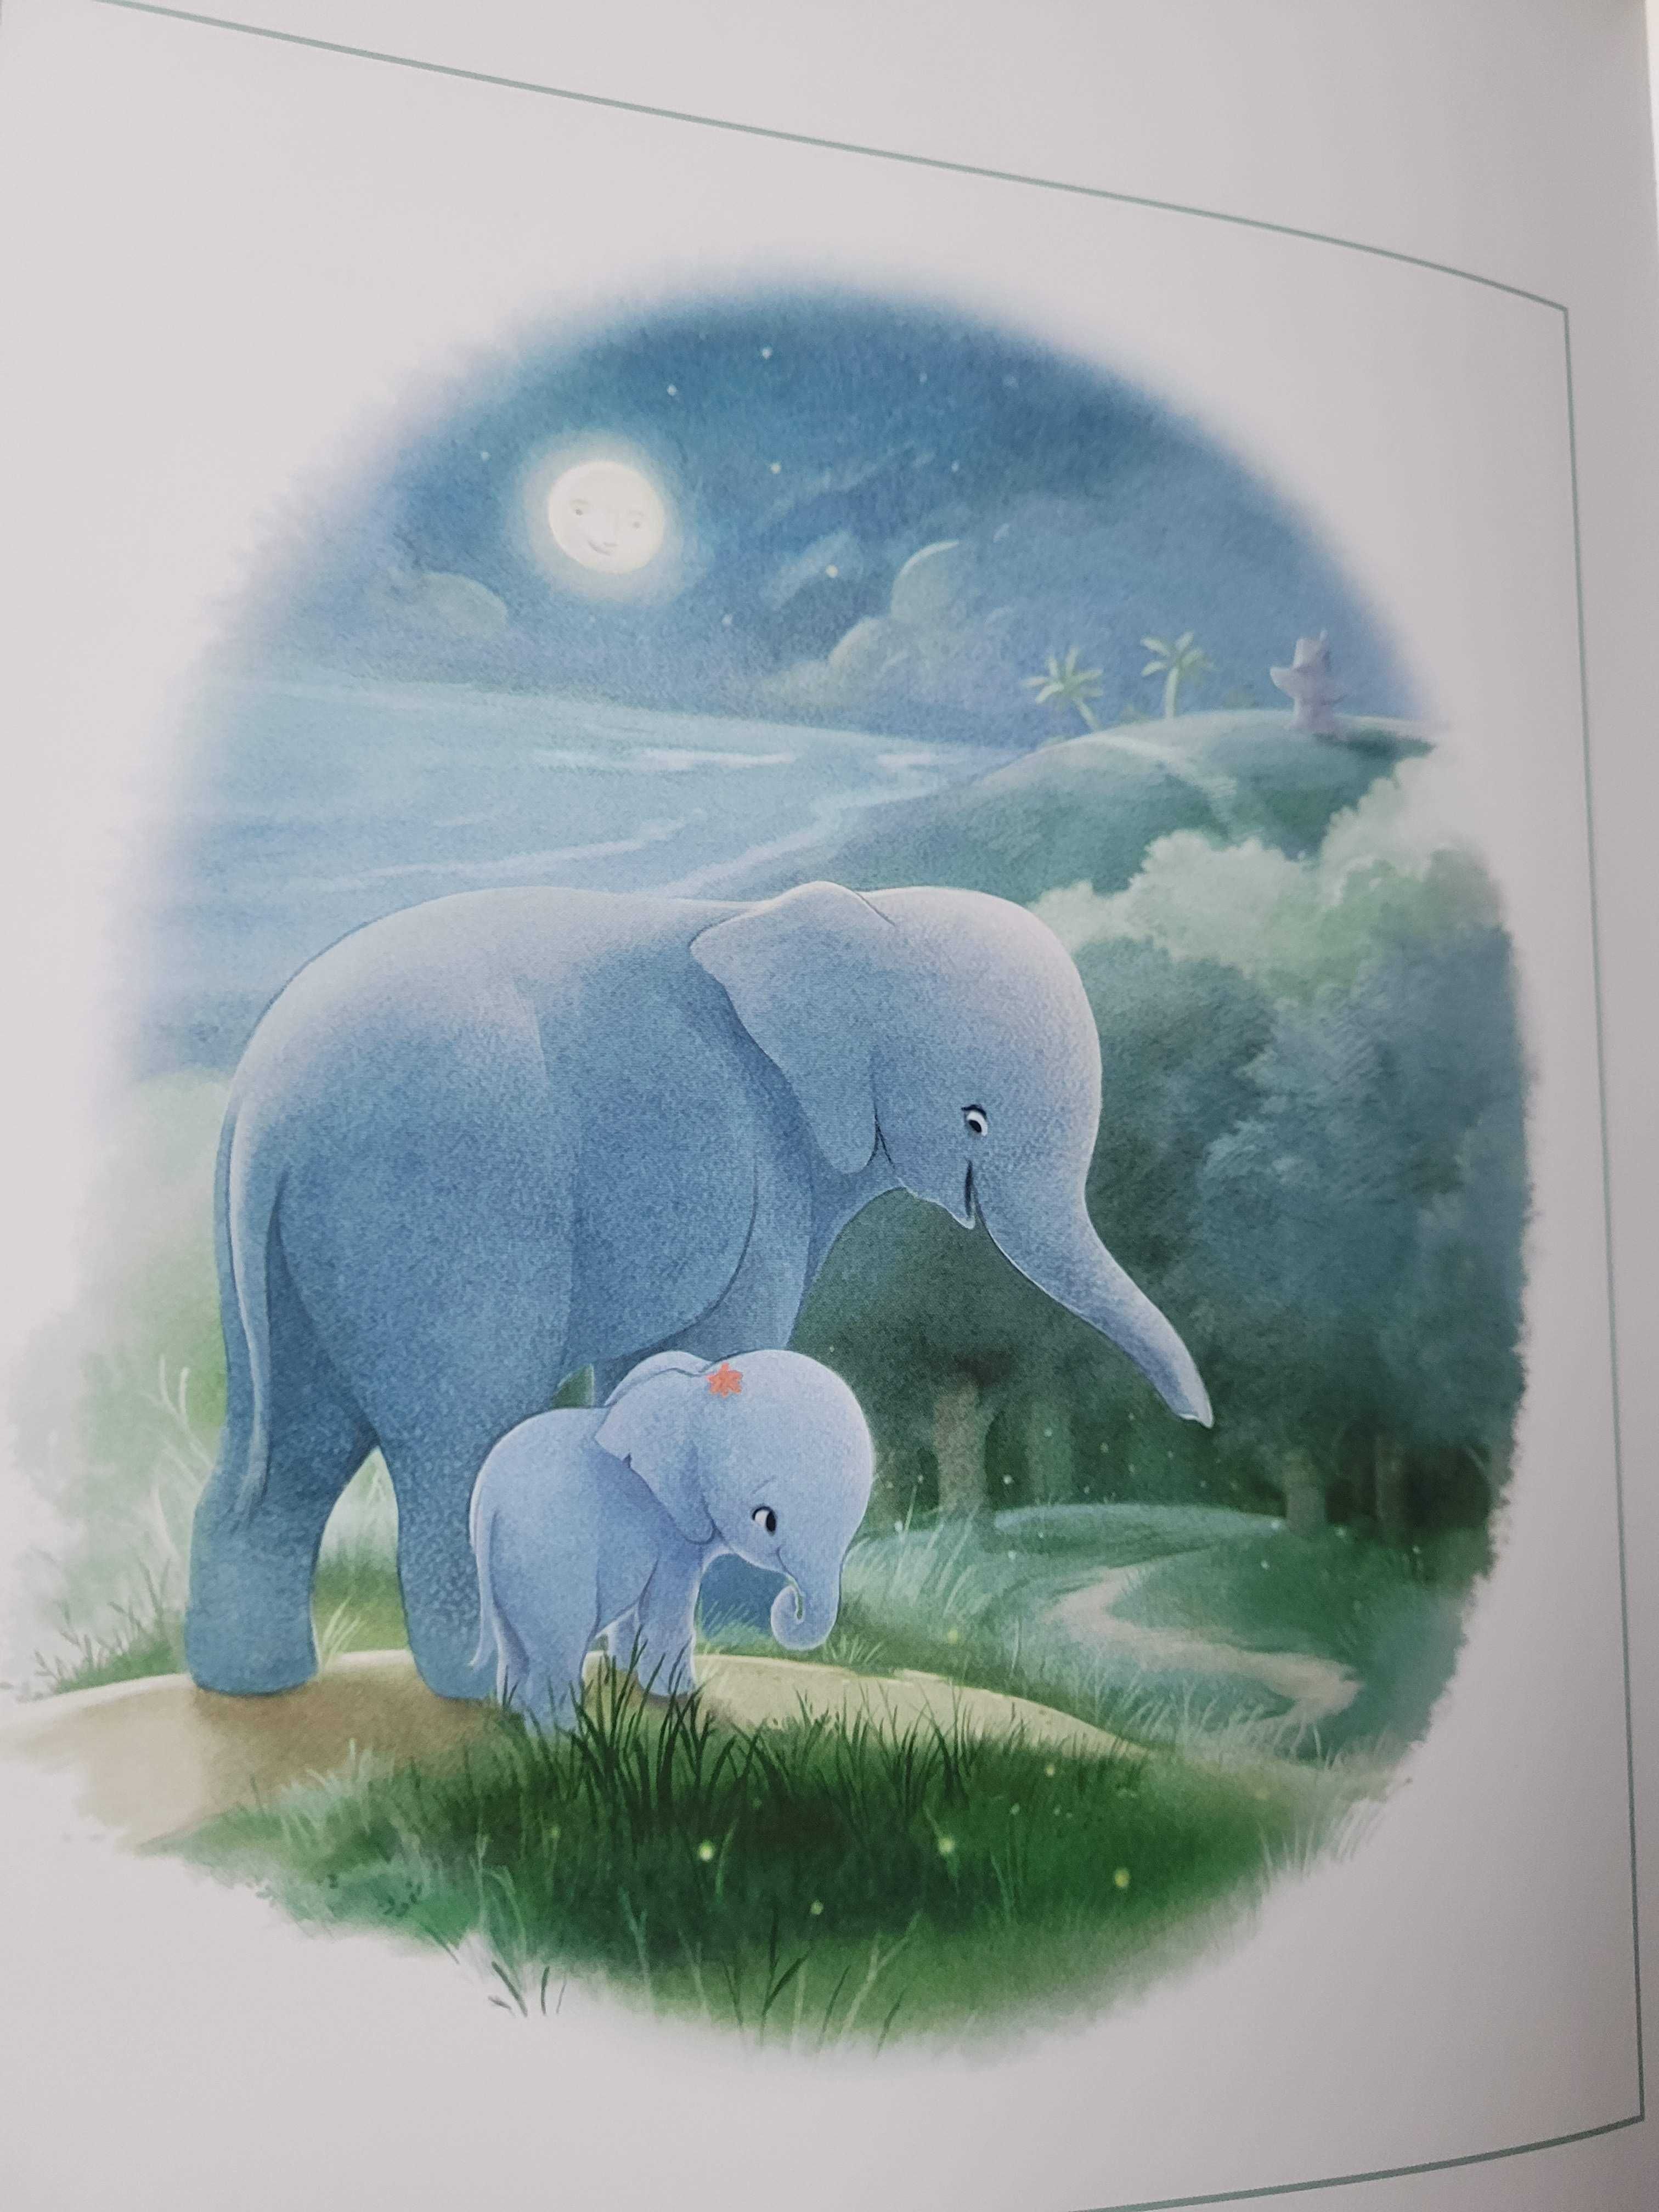 Wielkie problemy ze snem małej słonicy Eli - metoda usypiania dzieci